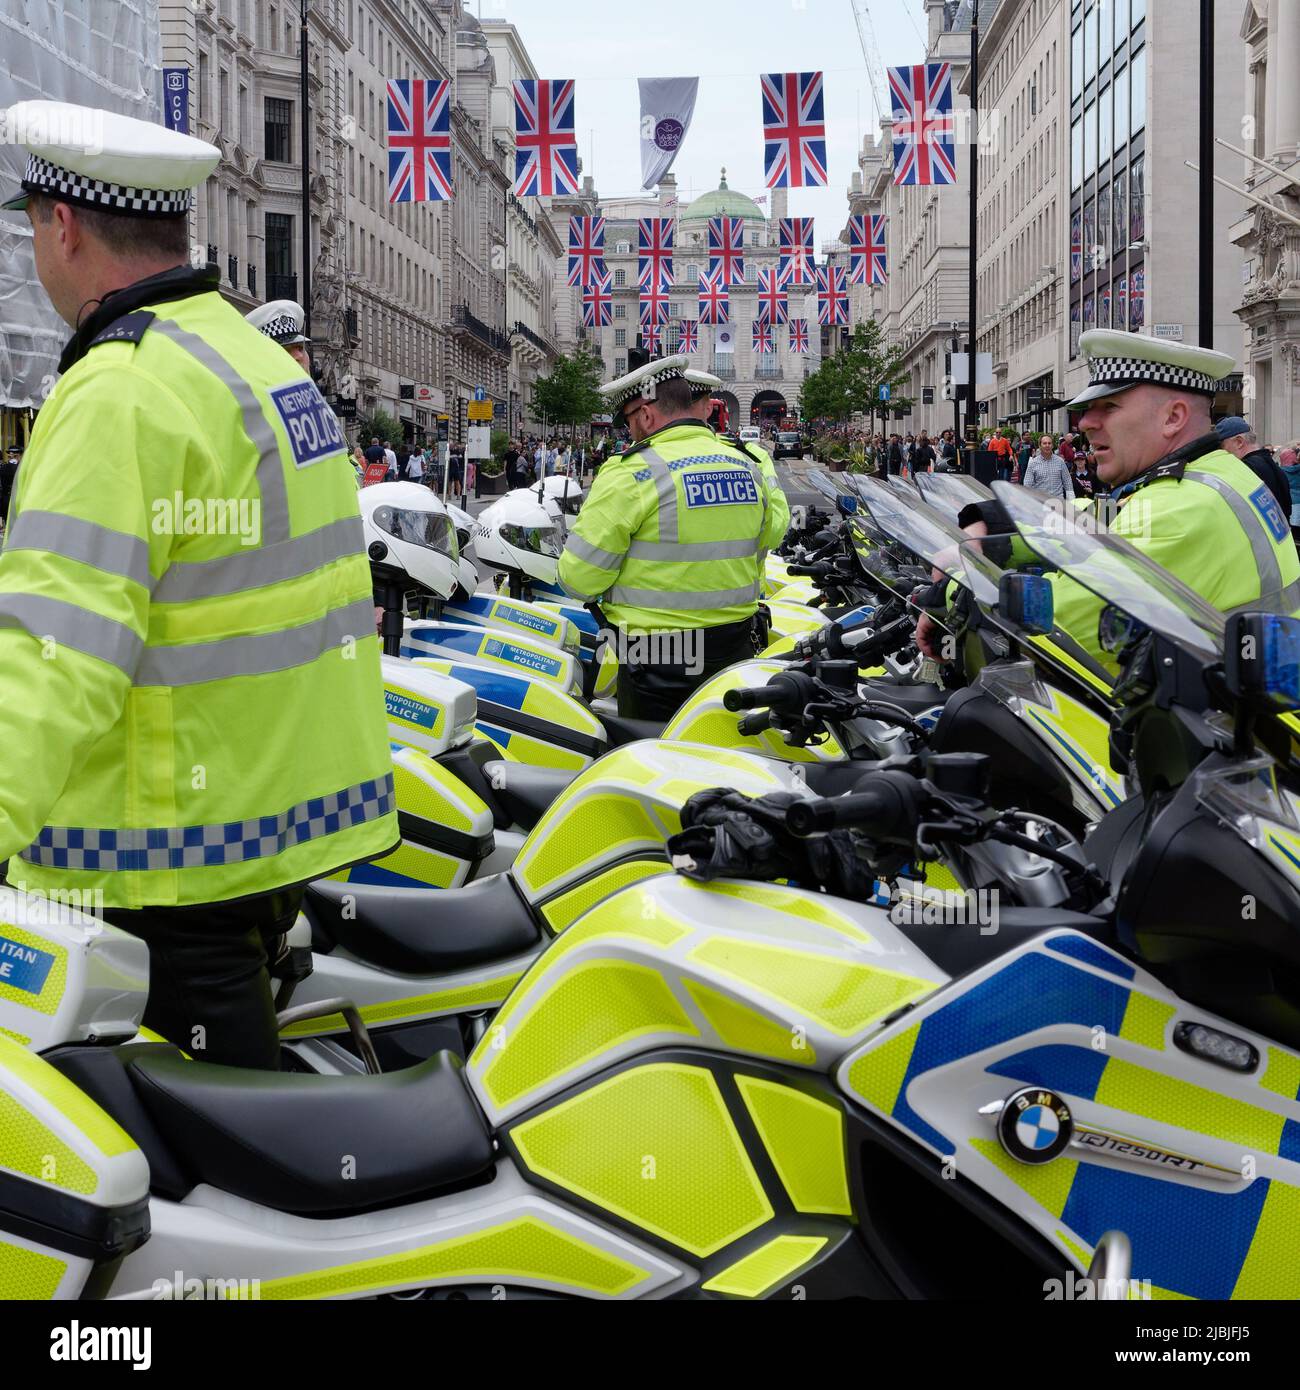 Londra, Grande Londra, Inghilterra, 04 2022 giugno: Polizia con moto a Waterloo Place, Union Jack bandiere volare durante le celebrazioni giubilari. Foto Stock